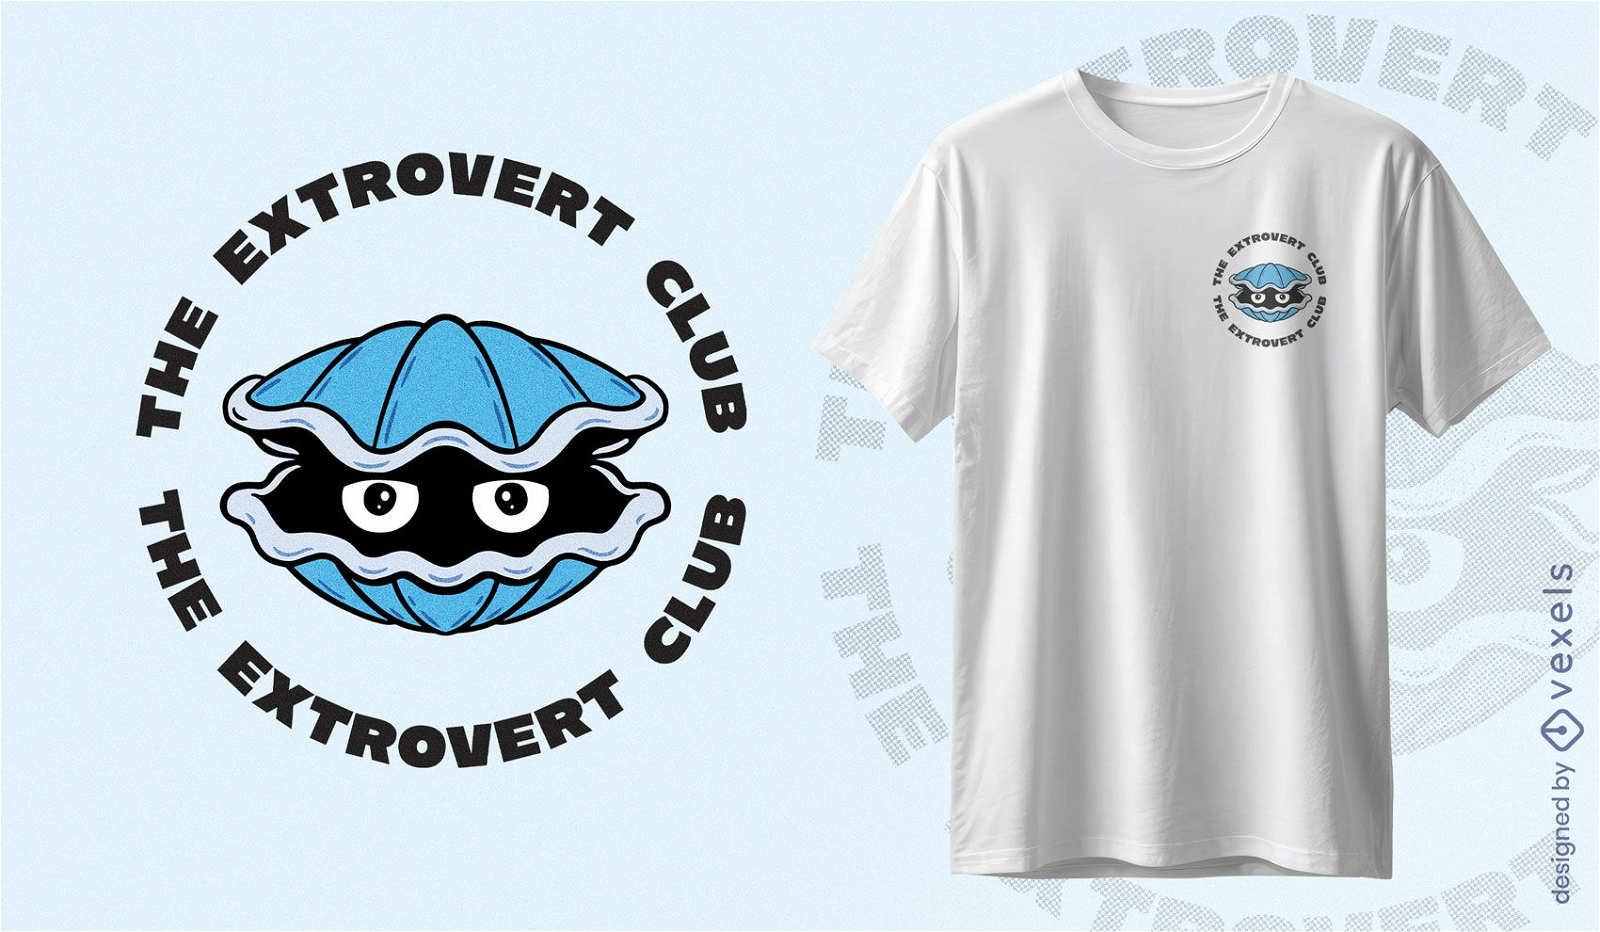 Diseño de camiseta de club extrovertido.